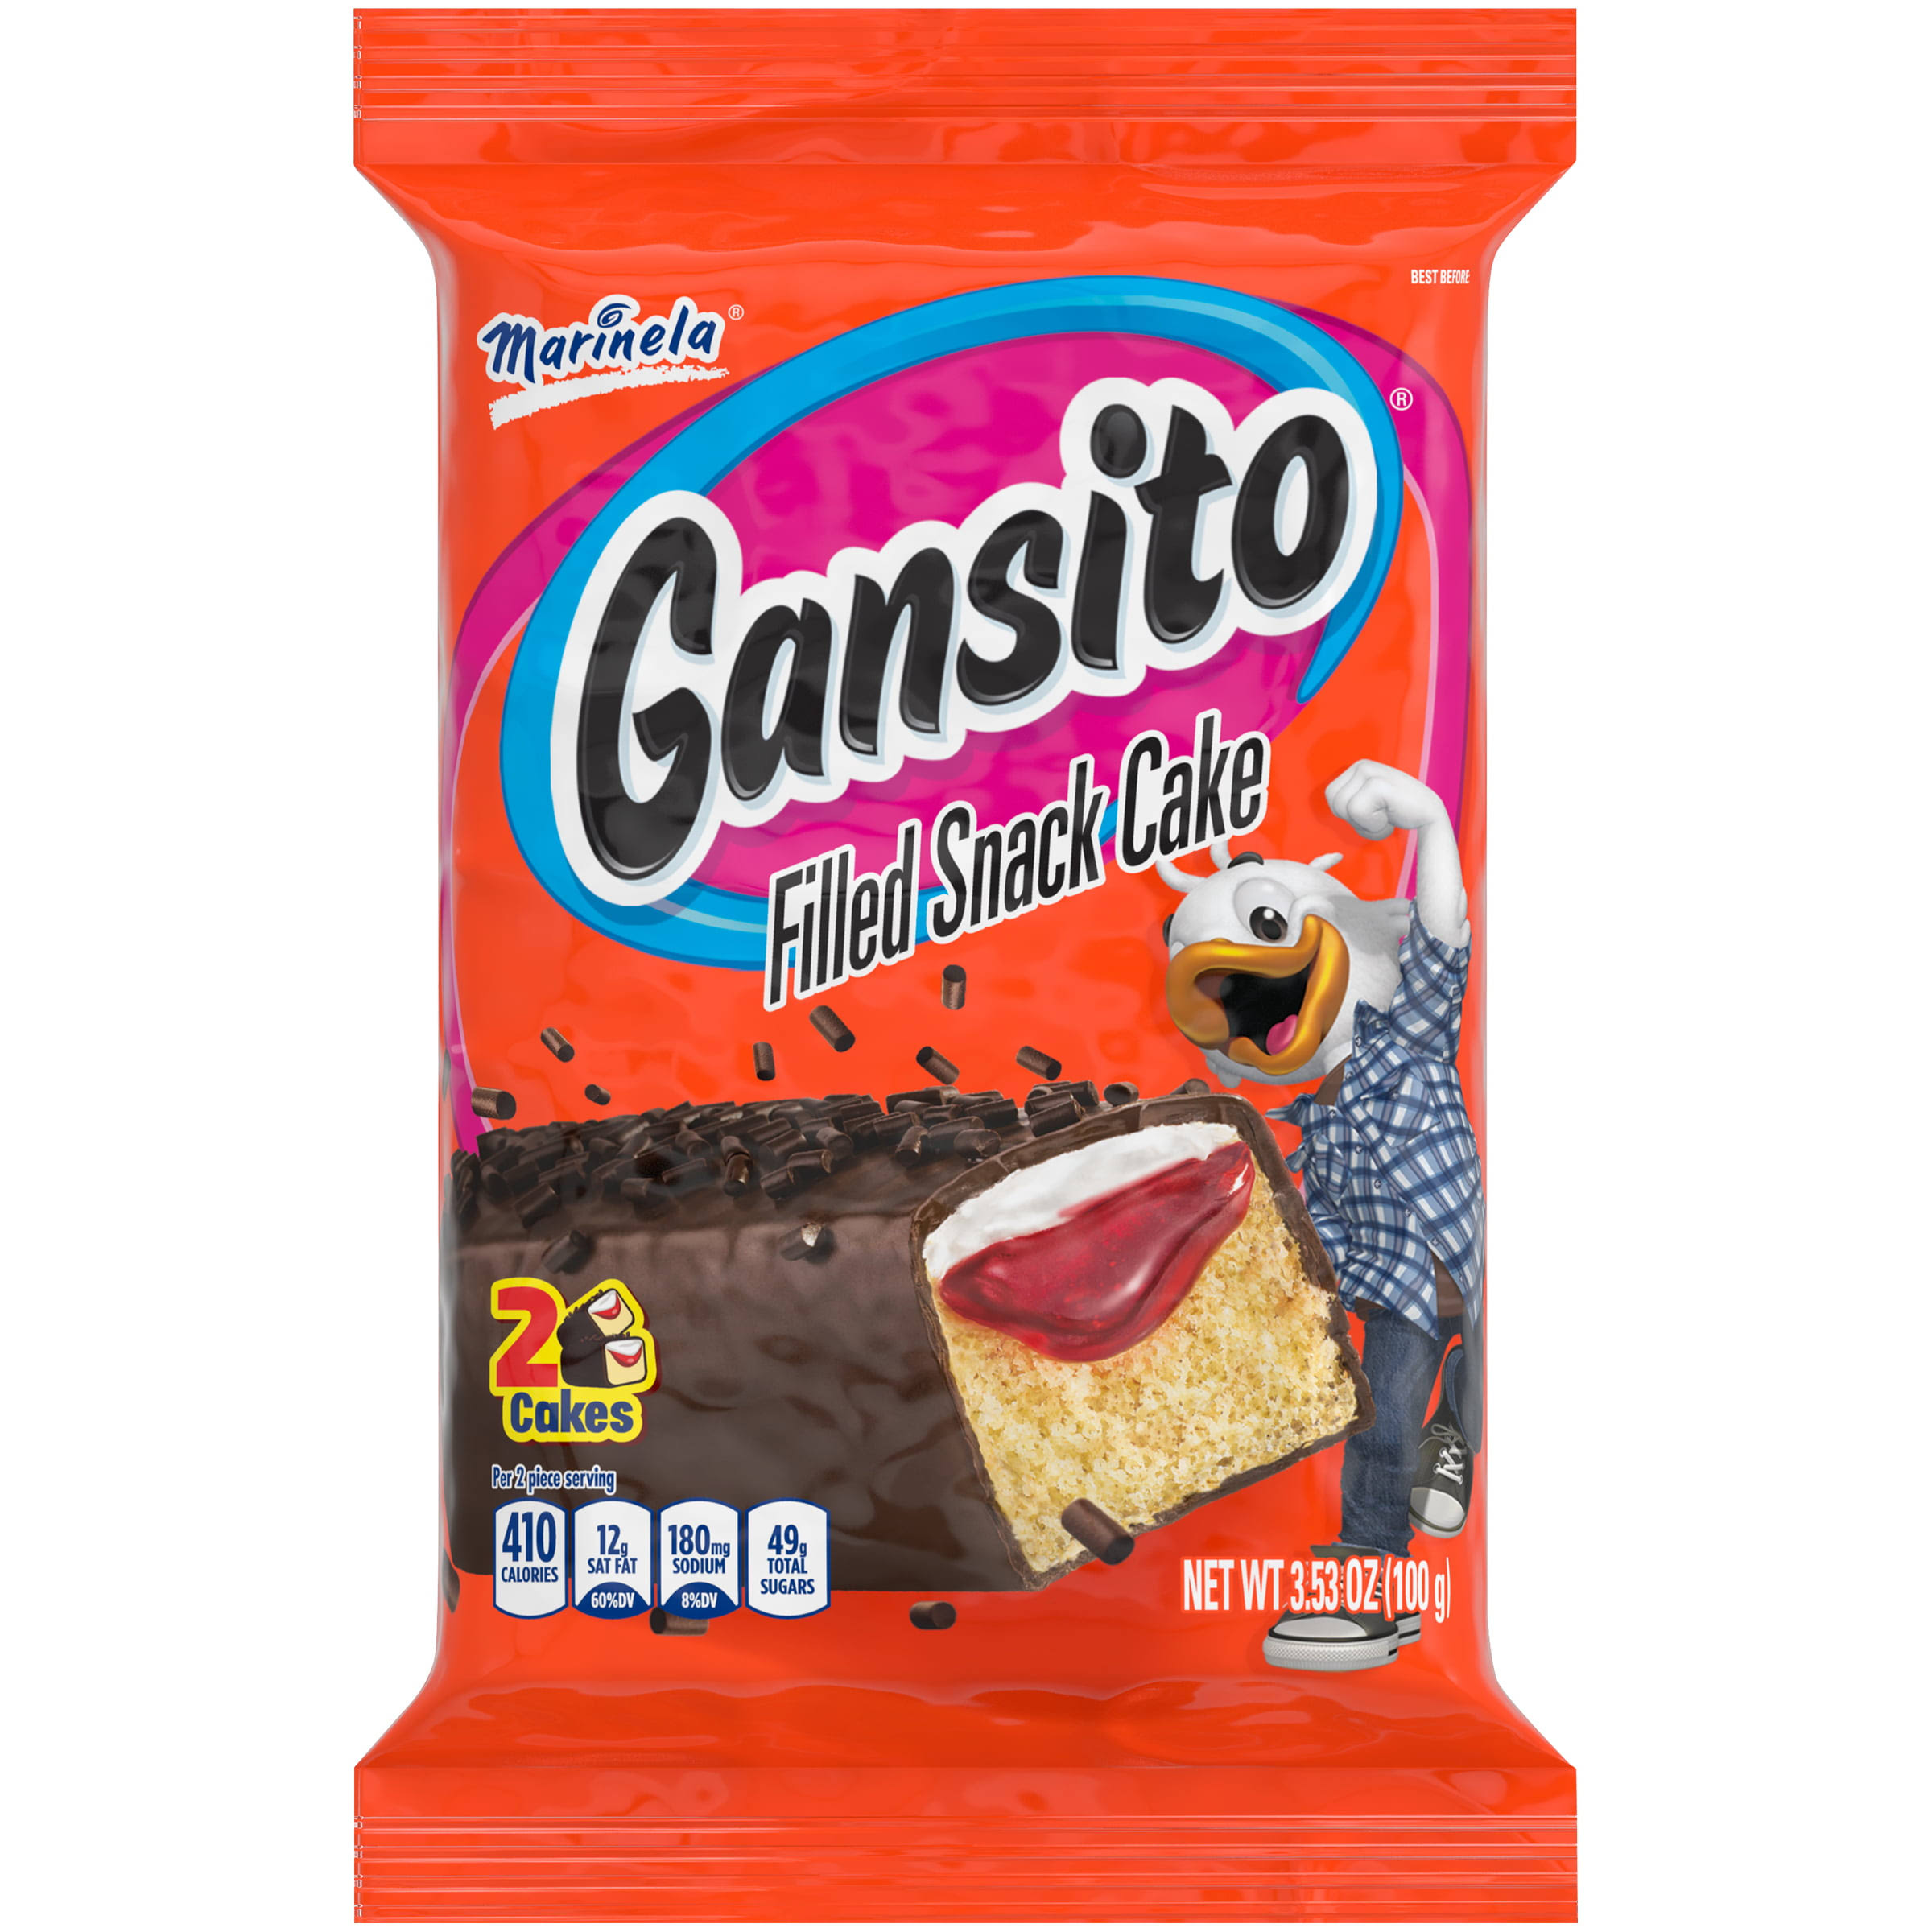 Marinela Gansito Snack Cakes - 3.5oz